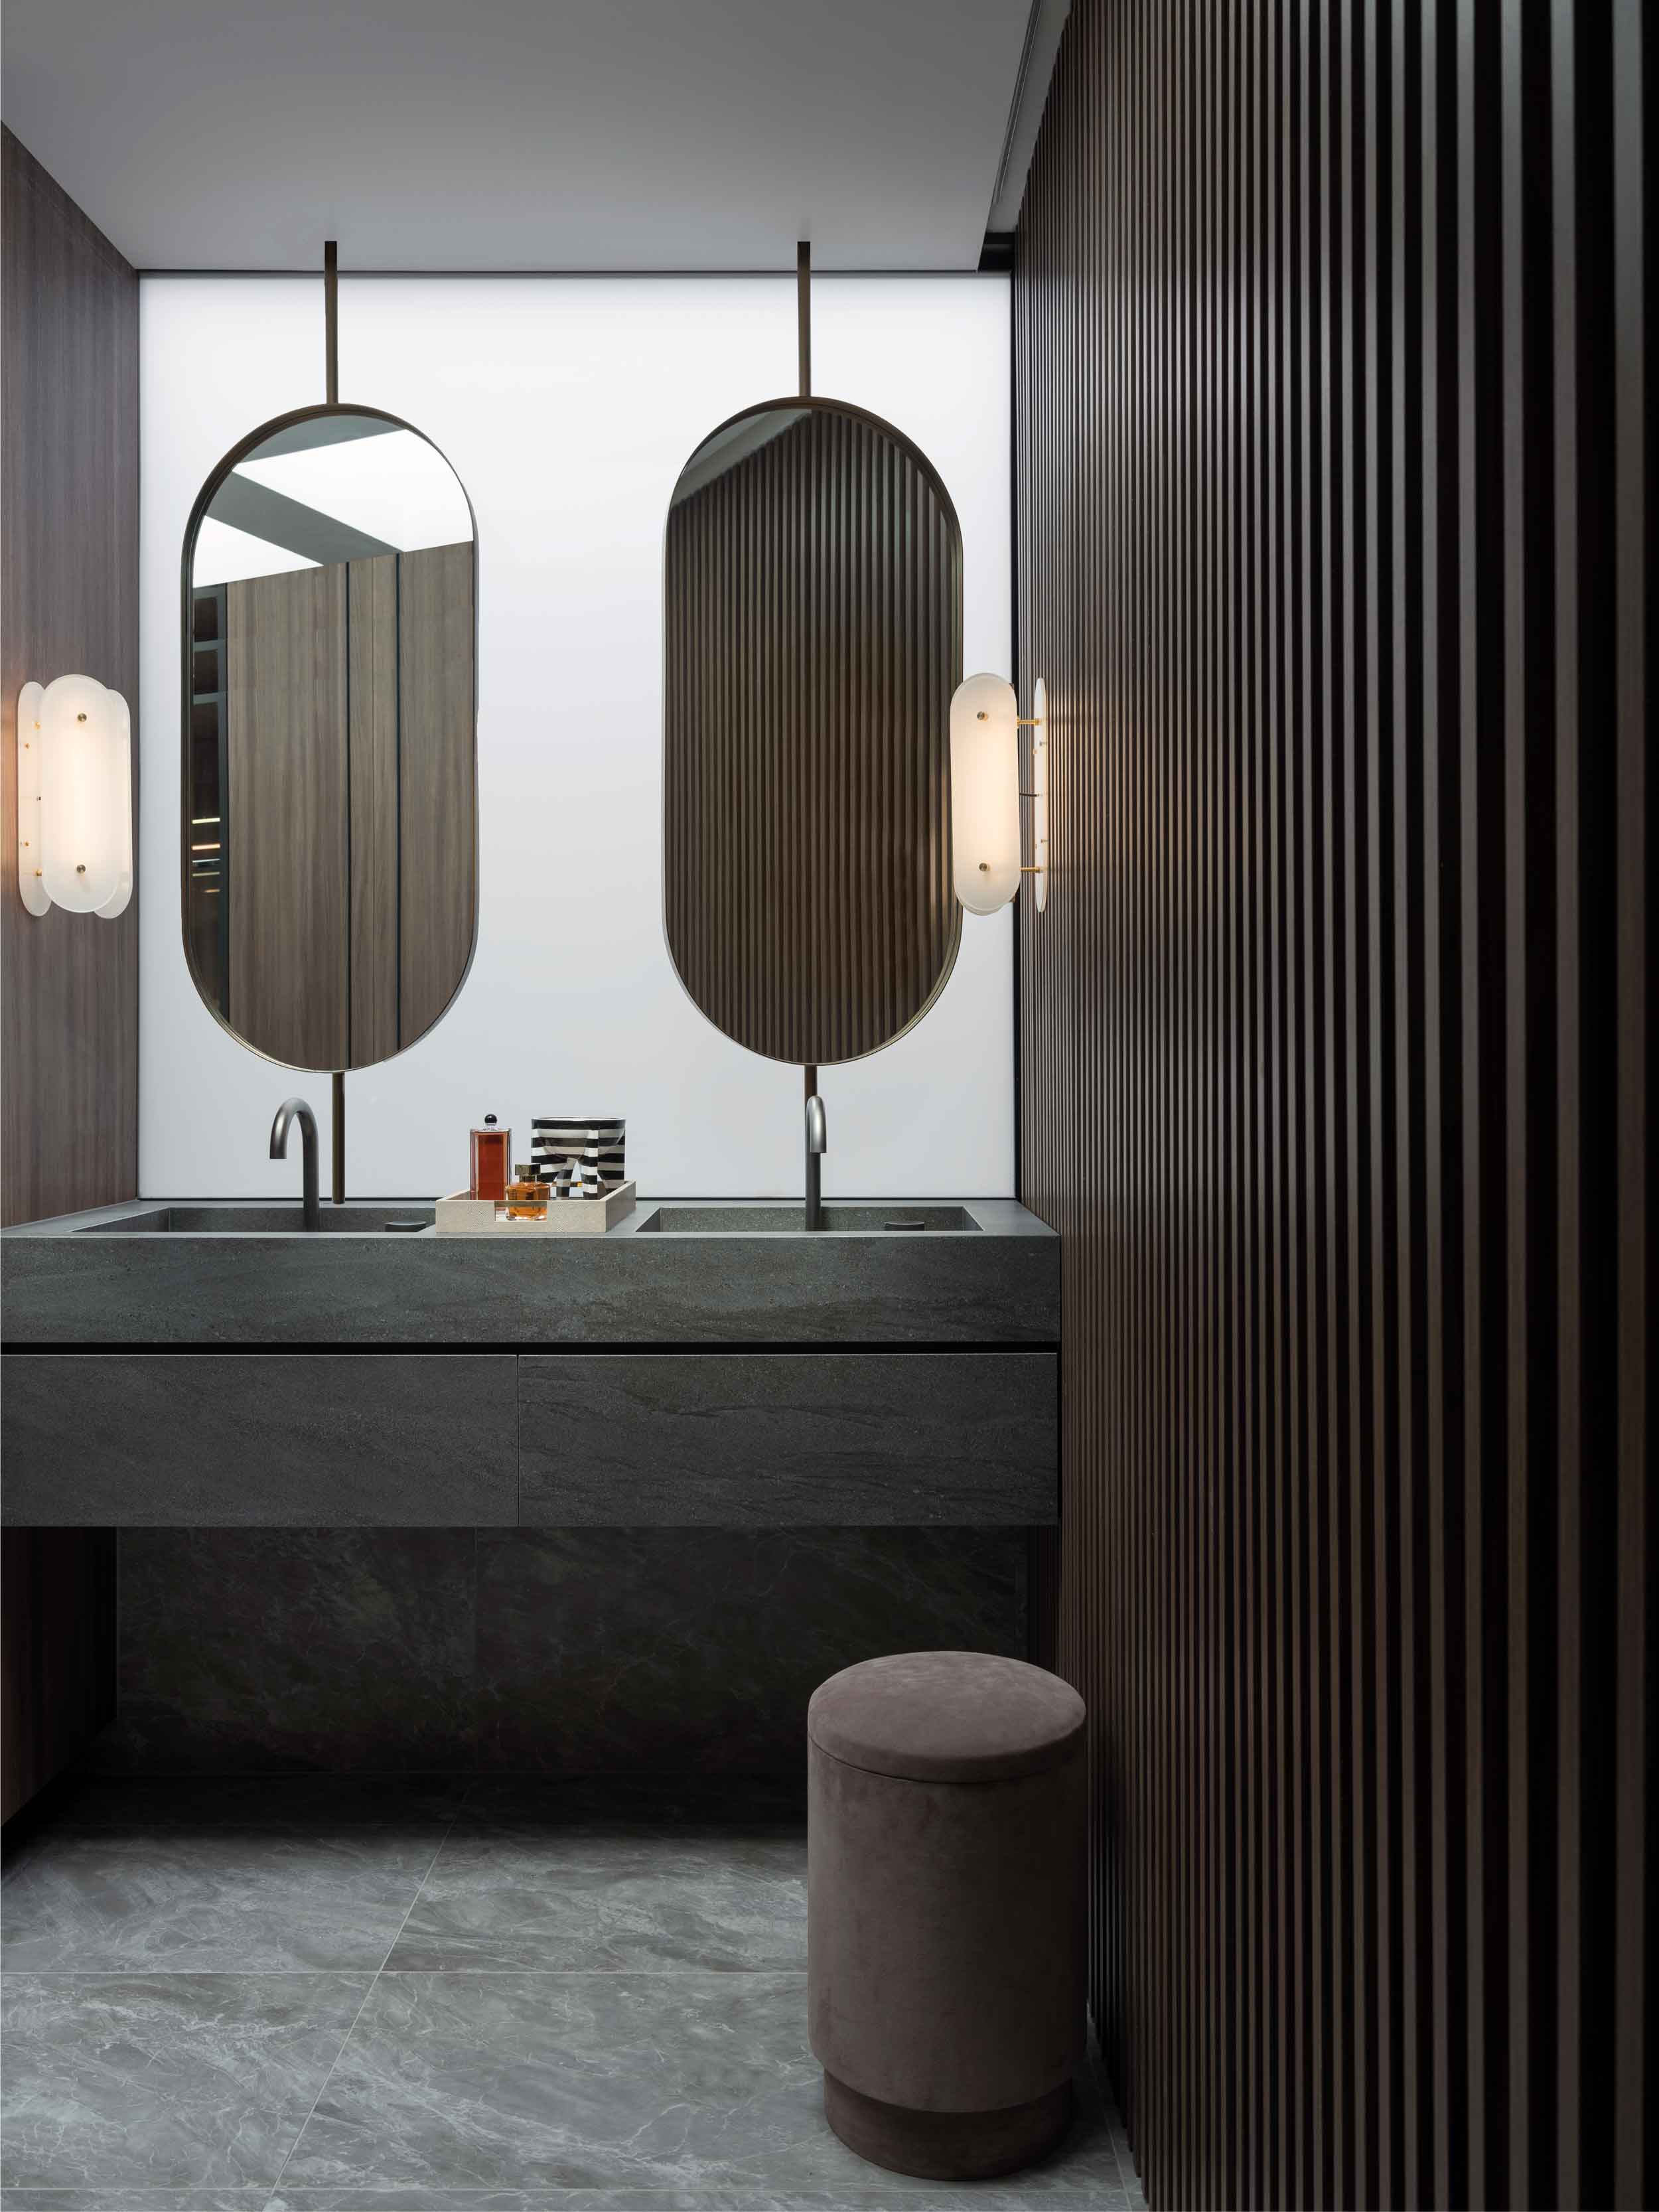 卫浴间镜面和洗手台对称布局，为餐厅就餐营造氛围感，彰显档次。